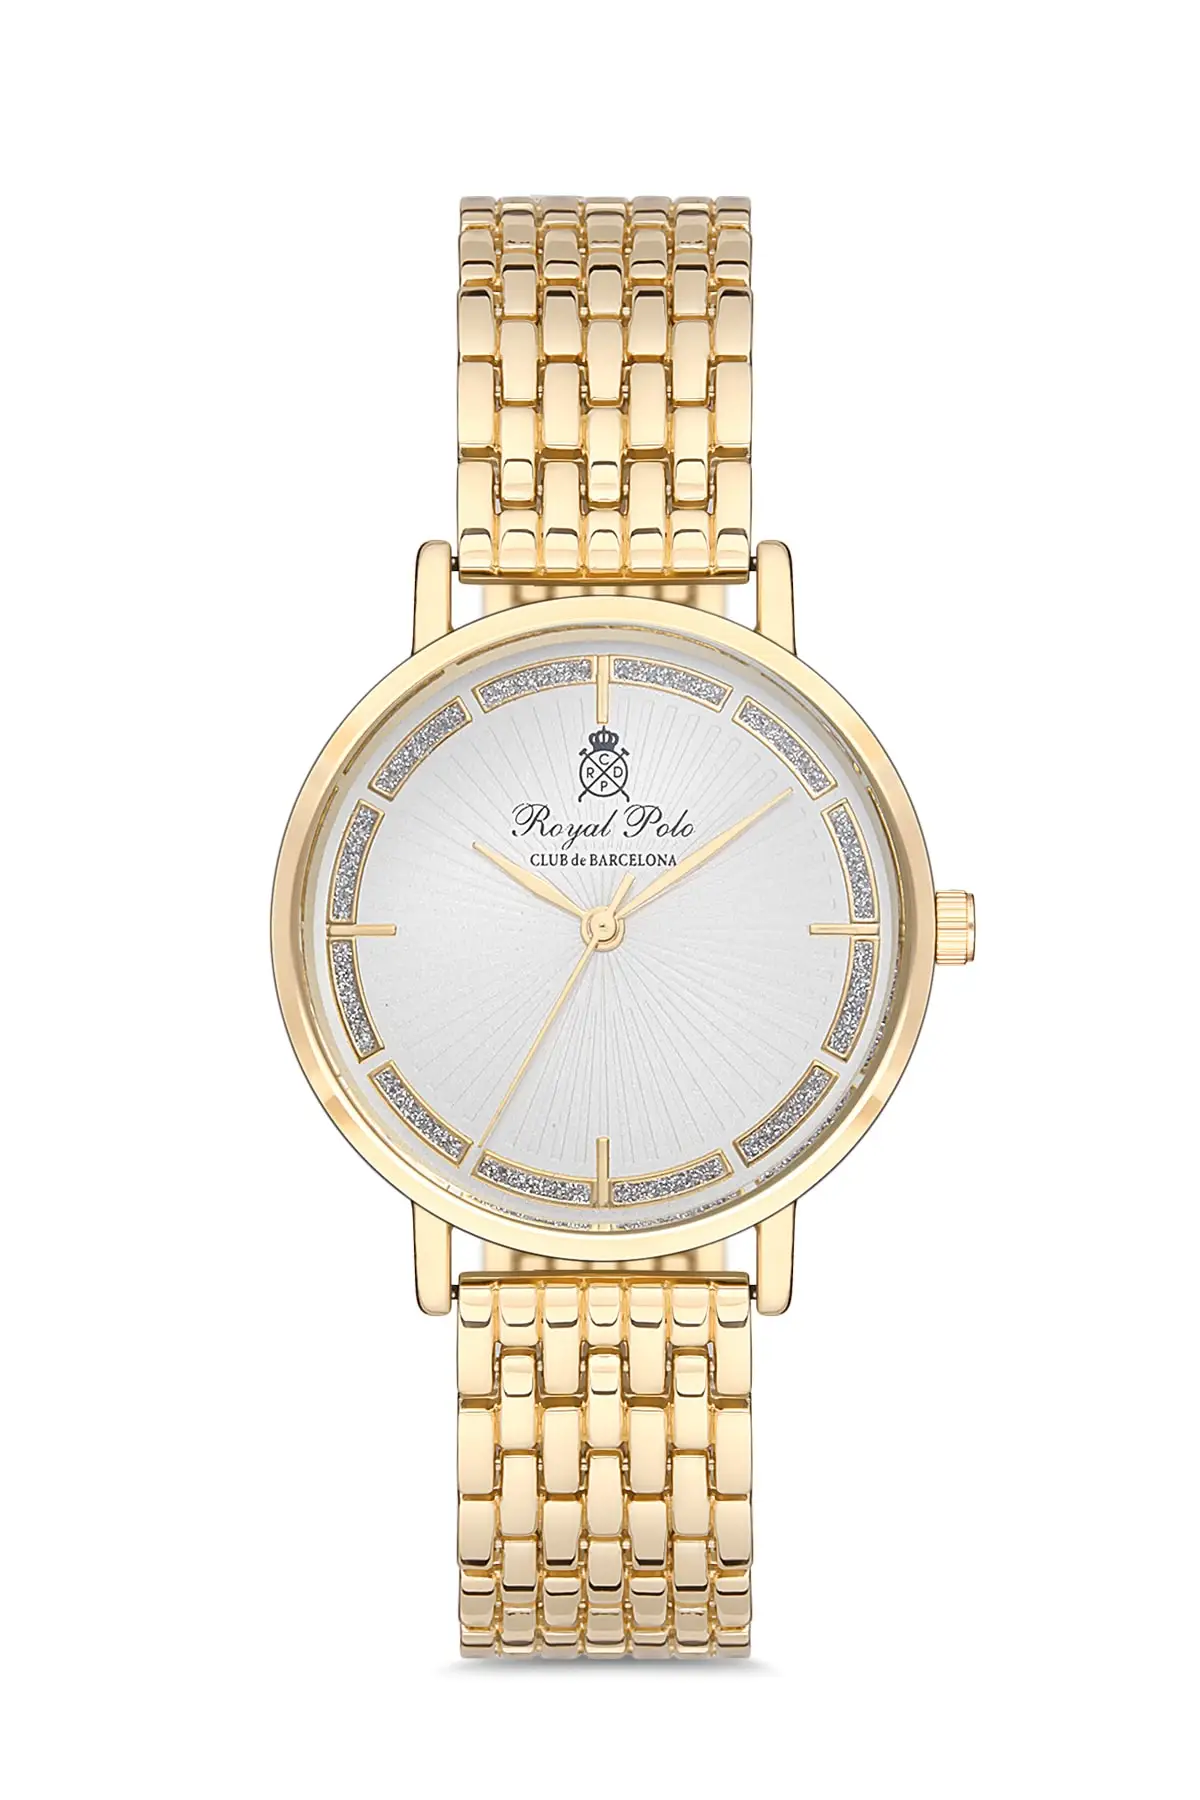 

2022 часы Металлические женские роскошные модные спортивные часы обновление брендов лучшие кварцевые стильные часы Высокое качество премиу...